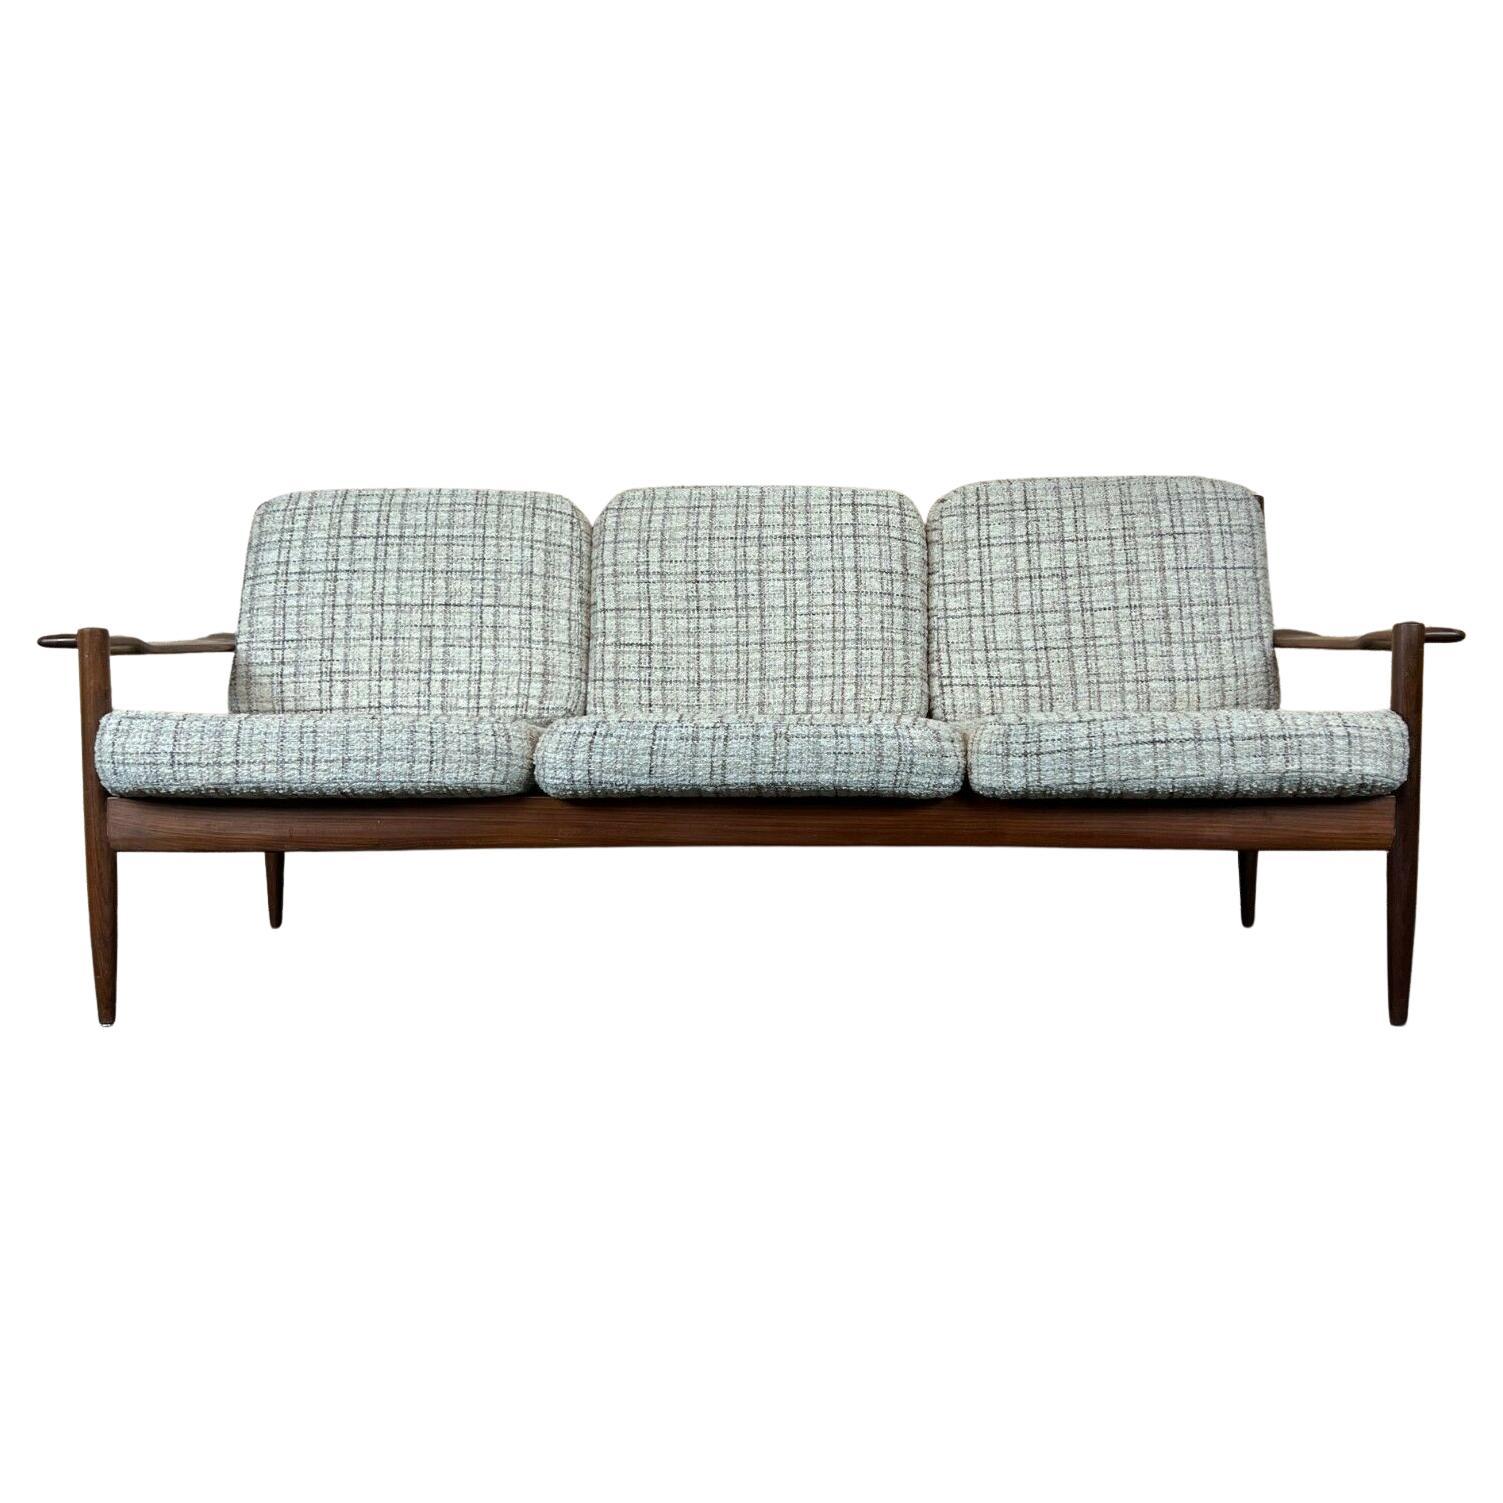 60s 70s Teak Sofa 3 Seater Couch Seating Set Danish Modern Design Denmark For Sale